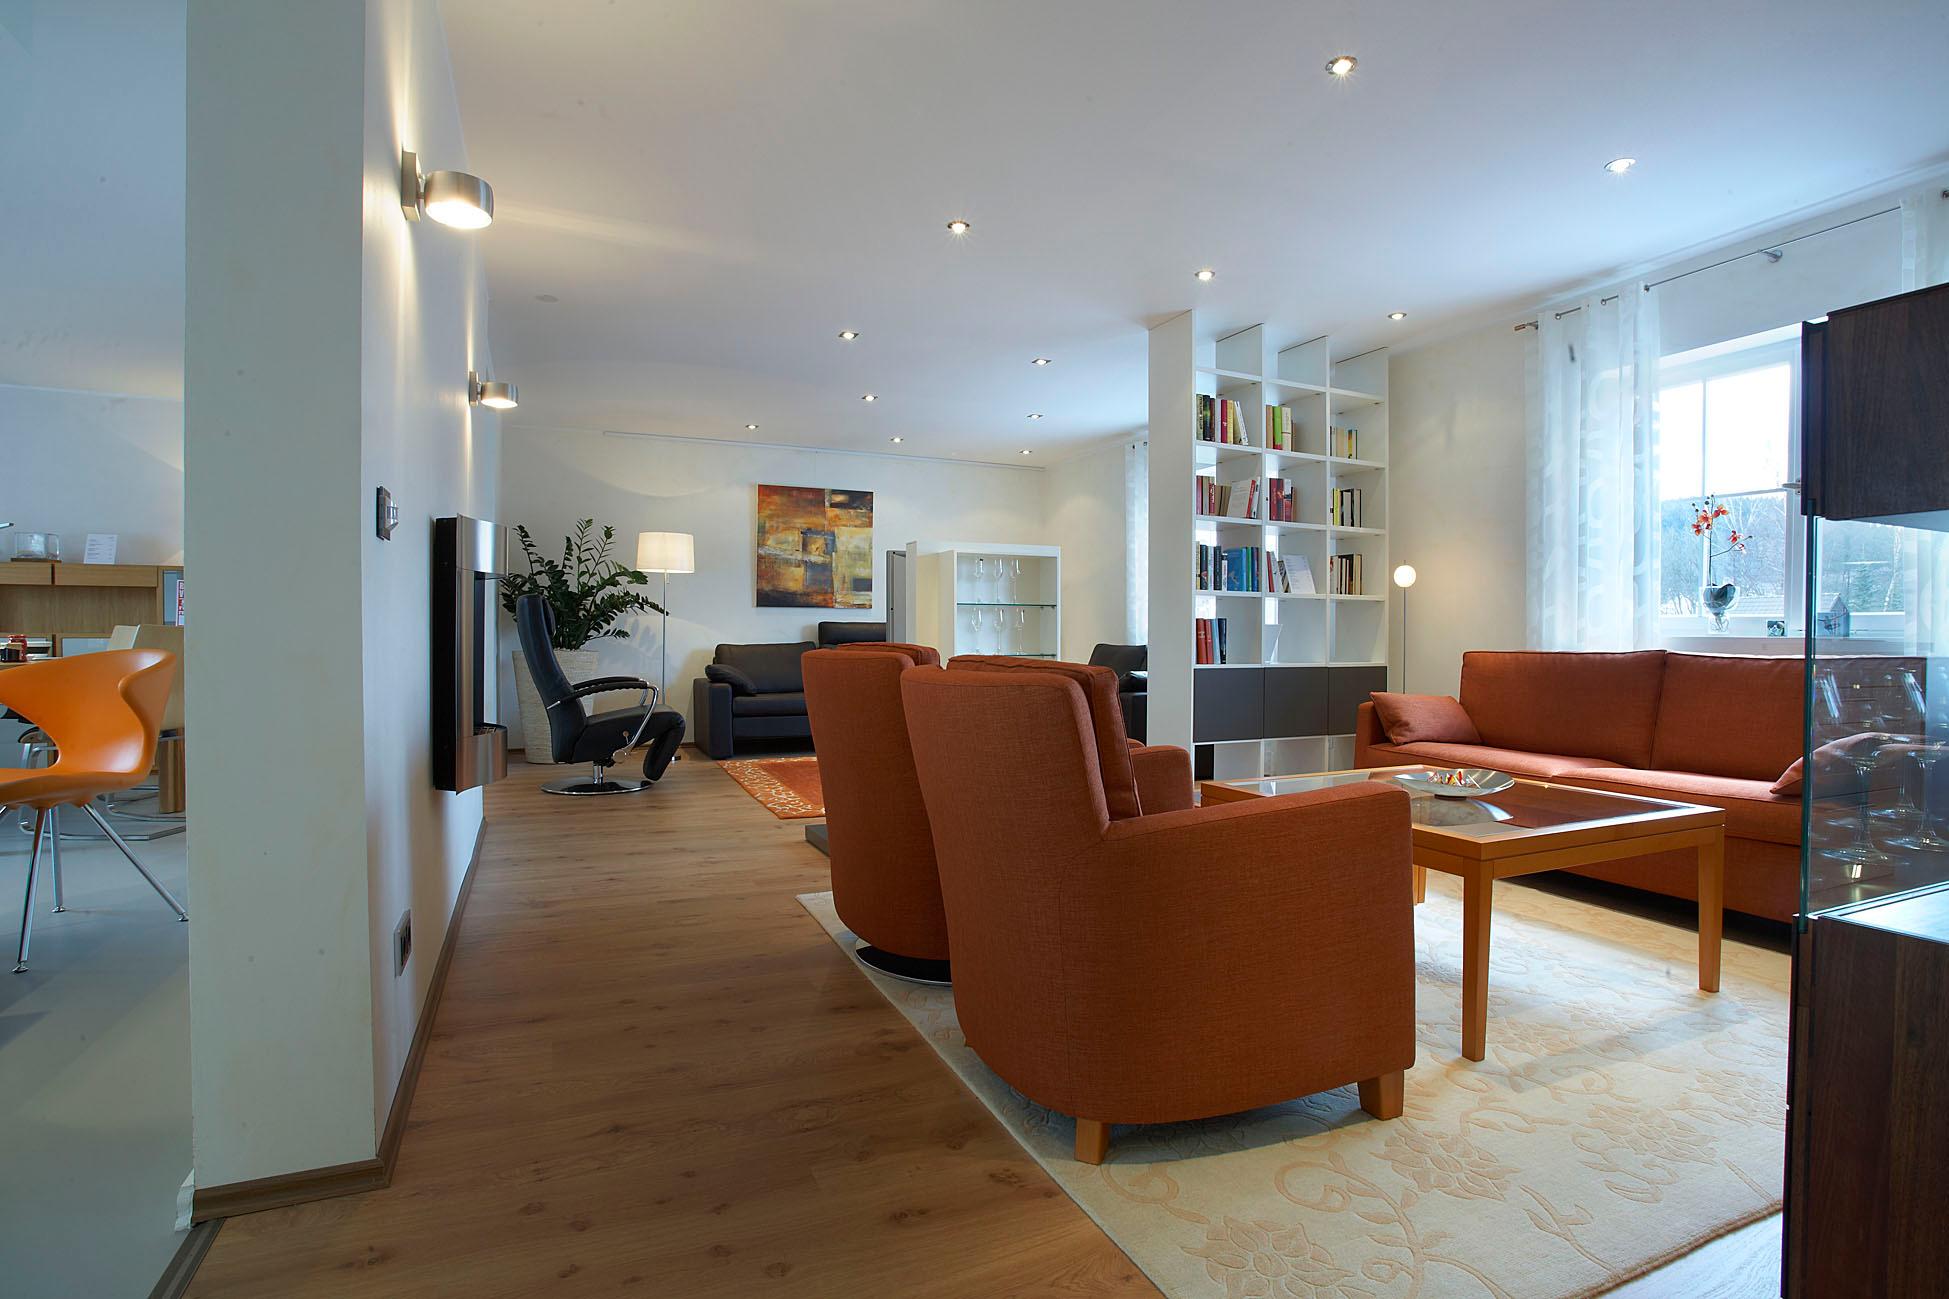 Wohnzimmer Musterwohnung #teppich #sessel #sofa #braunessofa ©Musterwohnung R7